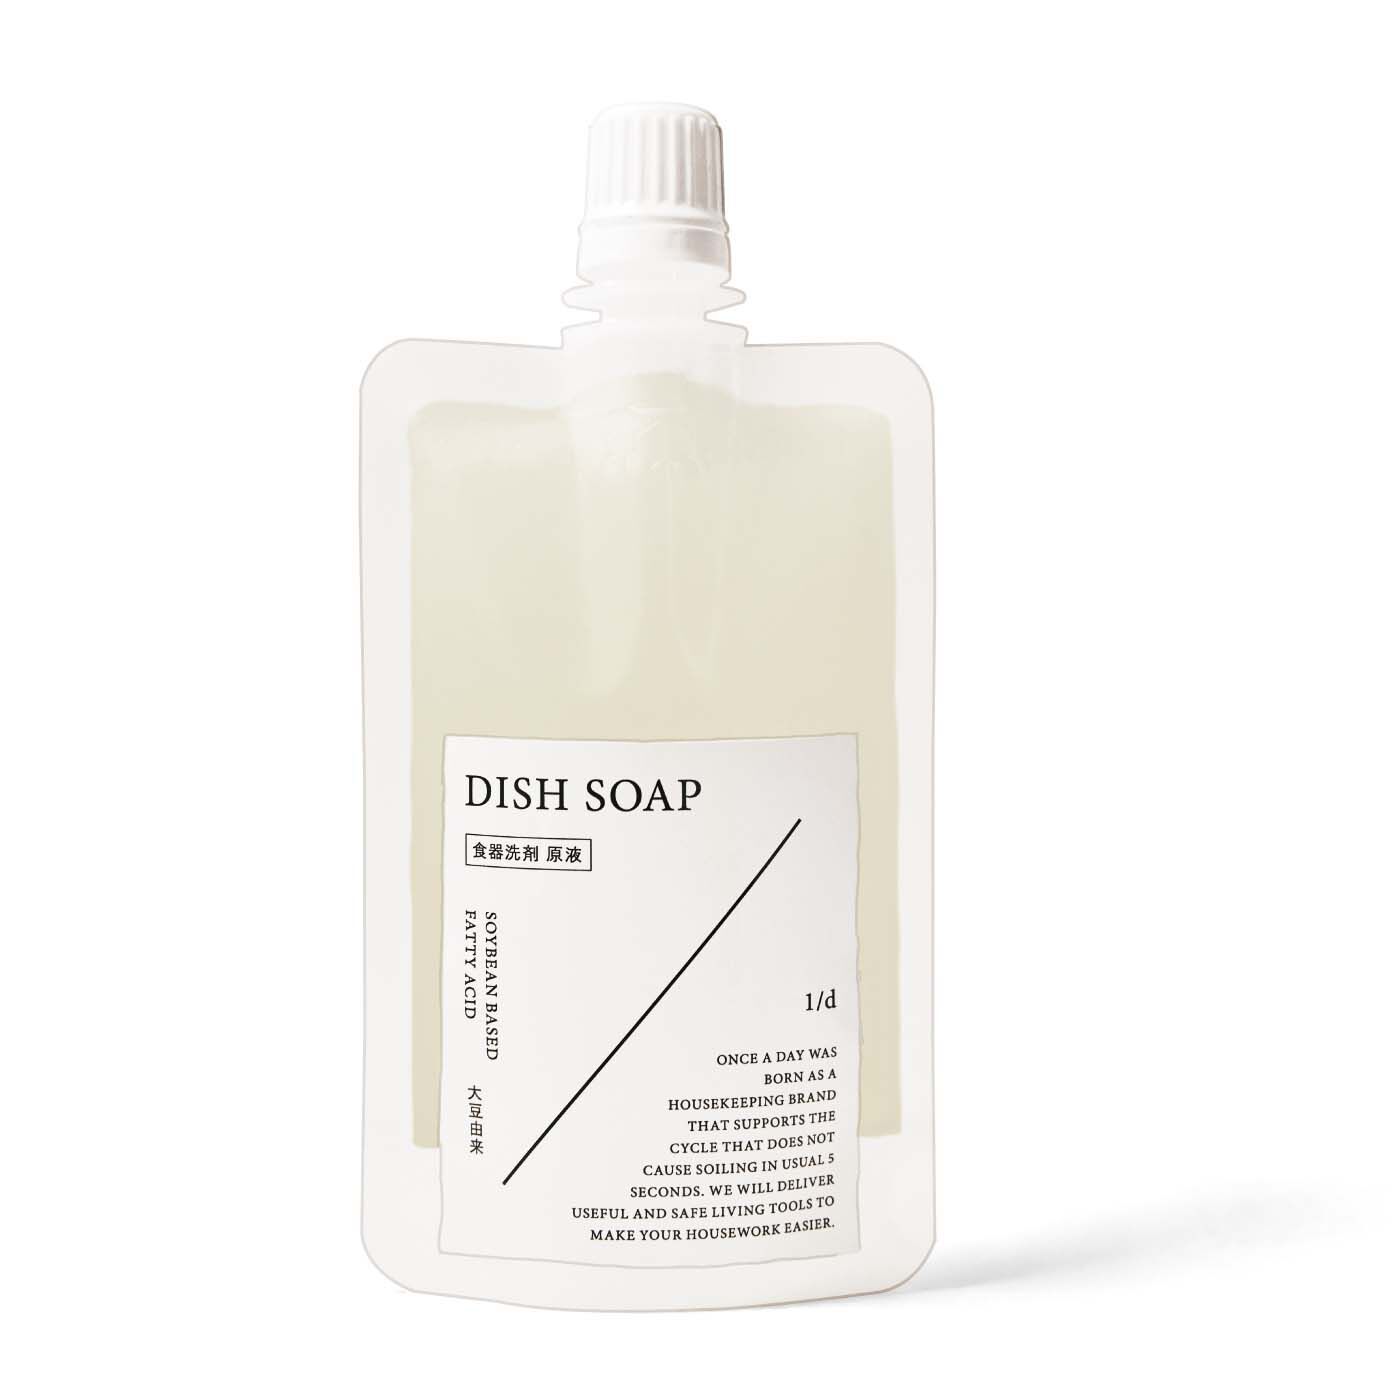 フェリシモの雑貨 Kraso|1/d DISH SOAP 食器用洗剤の会|DISH SOAP洗剤原液1袋